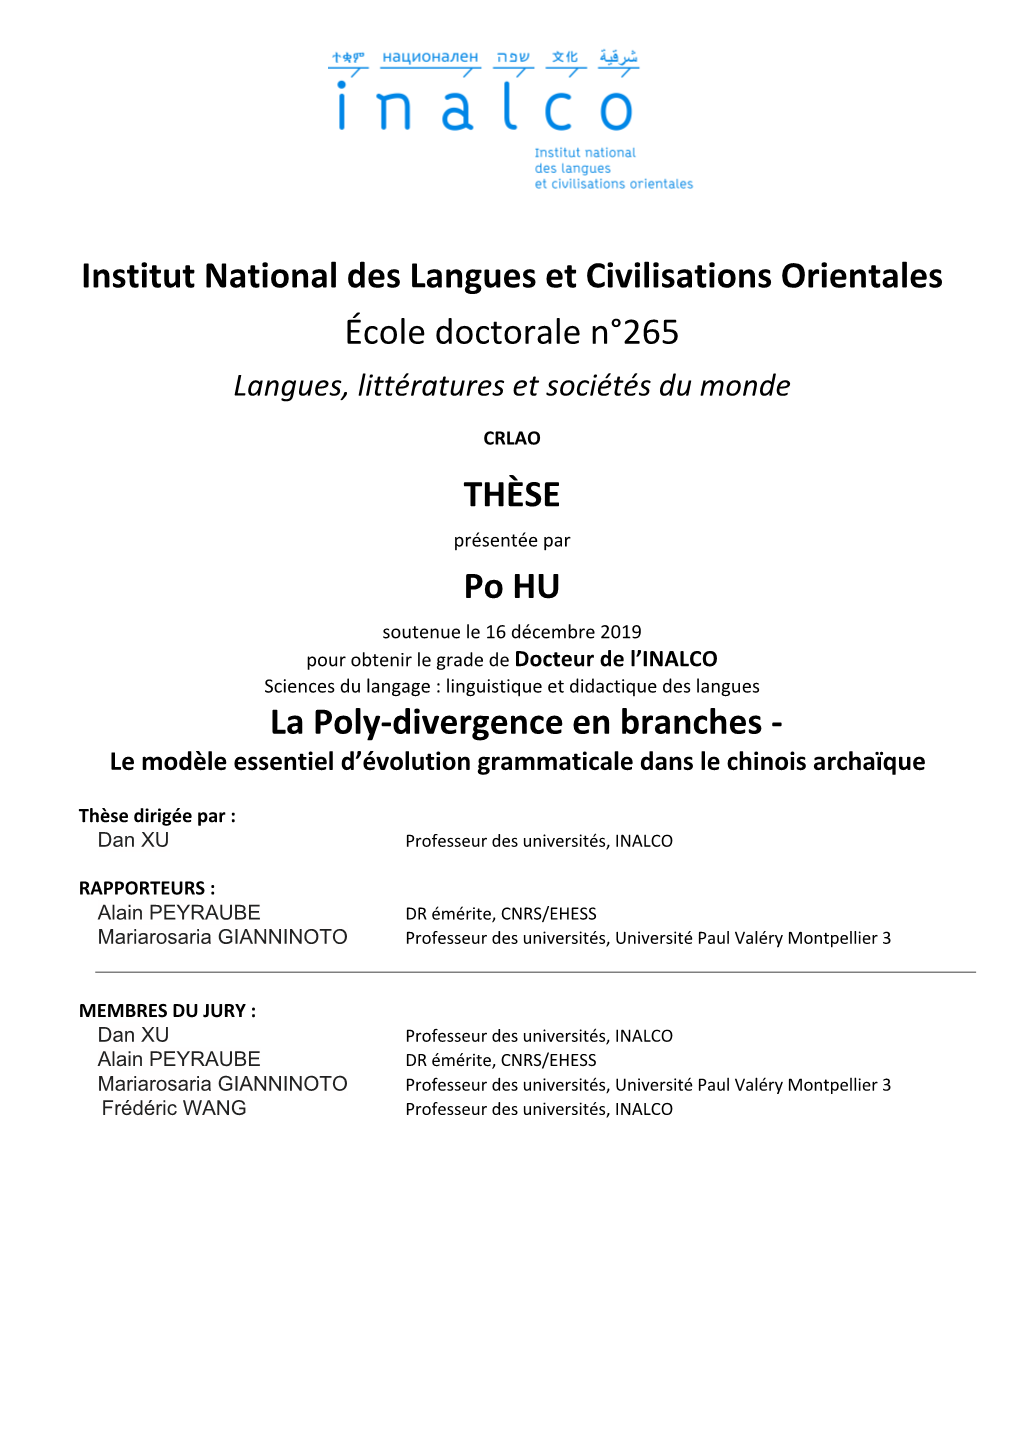 Institut National Des Langues Et Civilisations Orientales École Doctorale N°265 Langues, Littératures Et Sociétés Du Monde